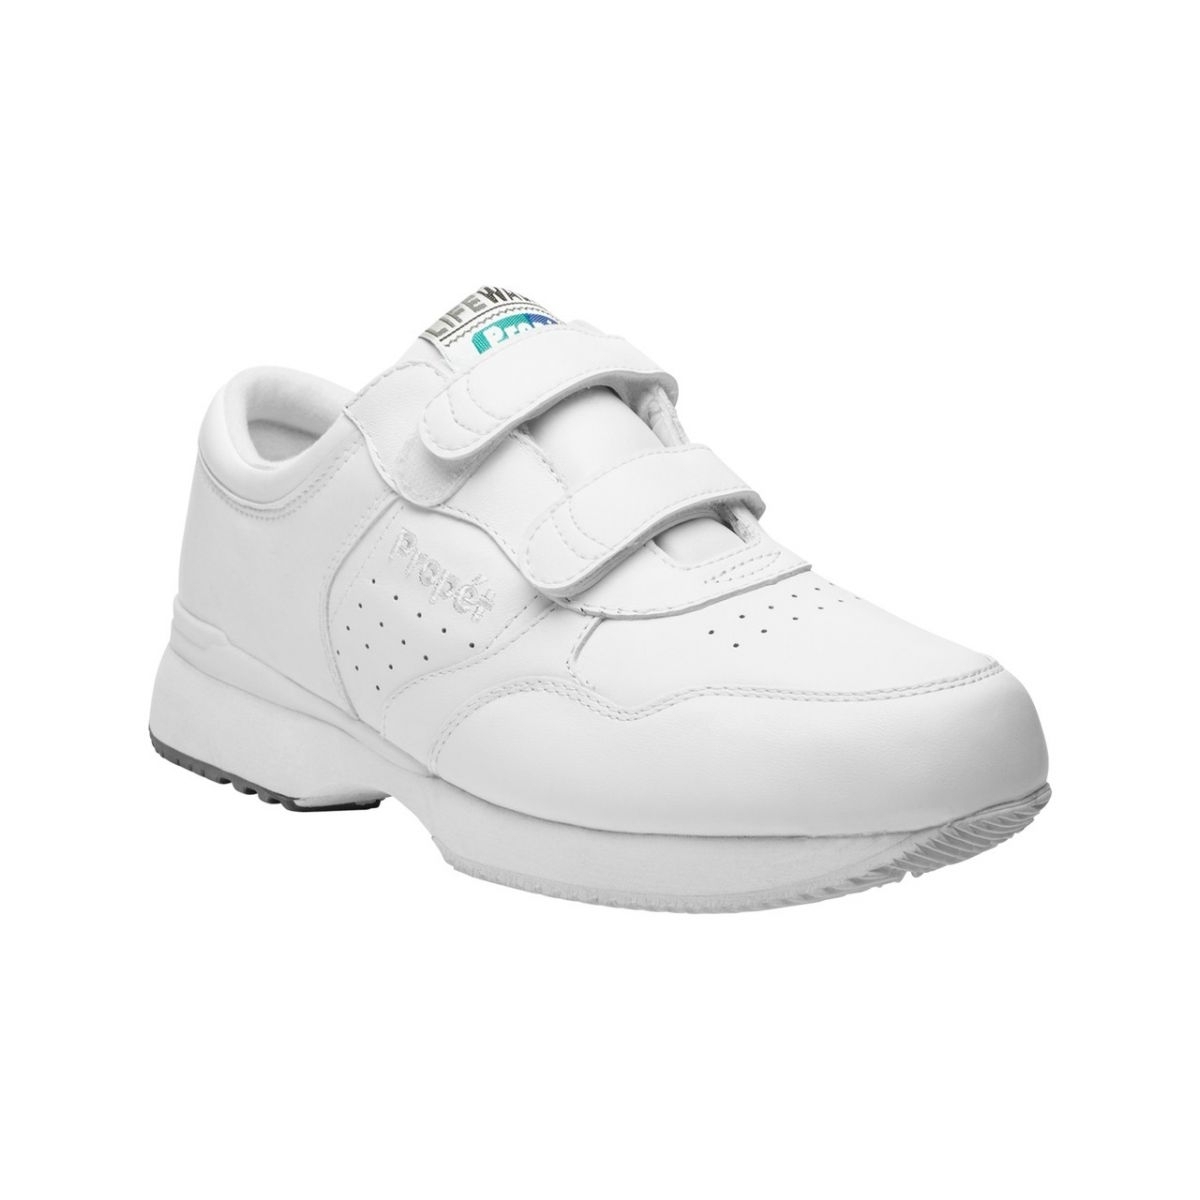 Propet Men's Life Walker Strap Shoe White - M3705WHT WHITE - WHITE, 10.5-E